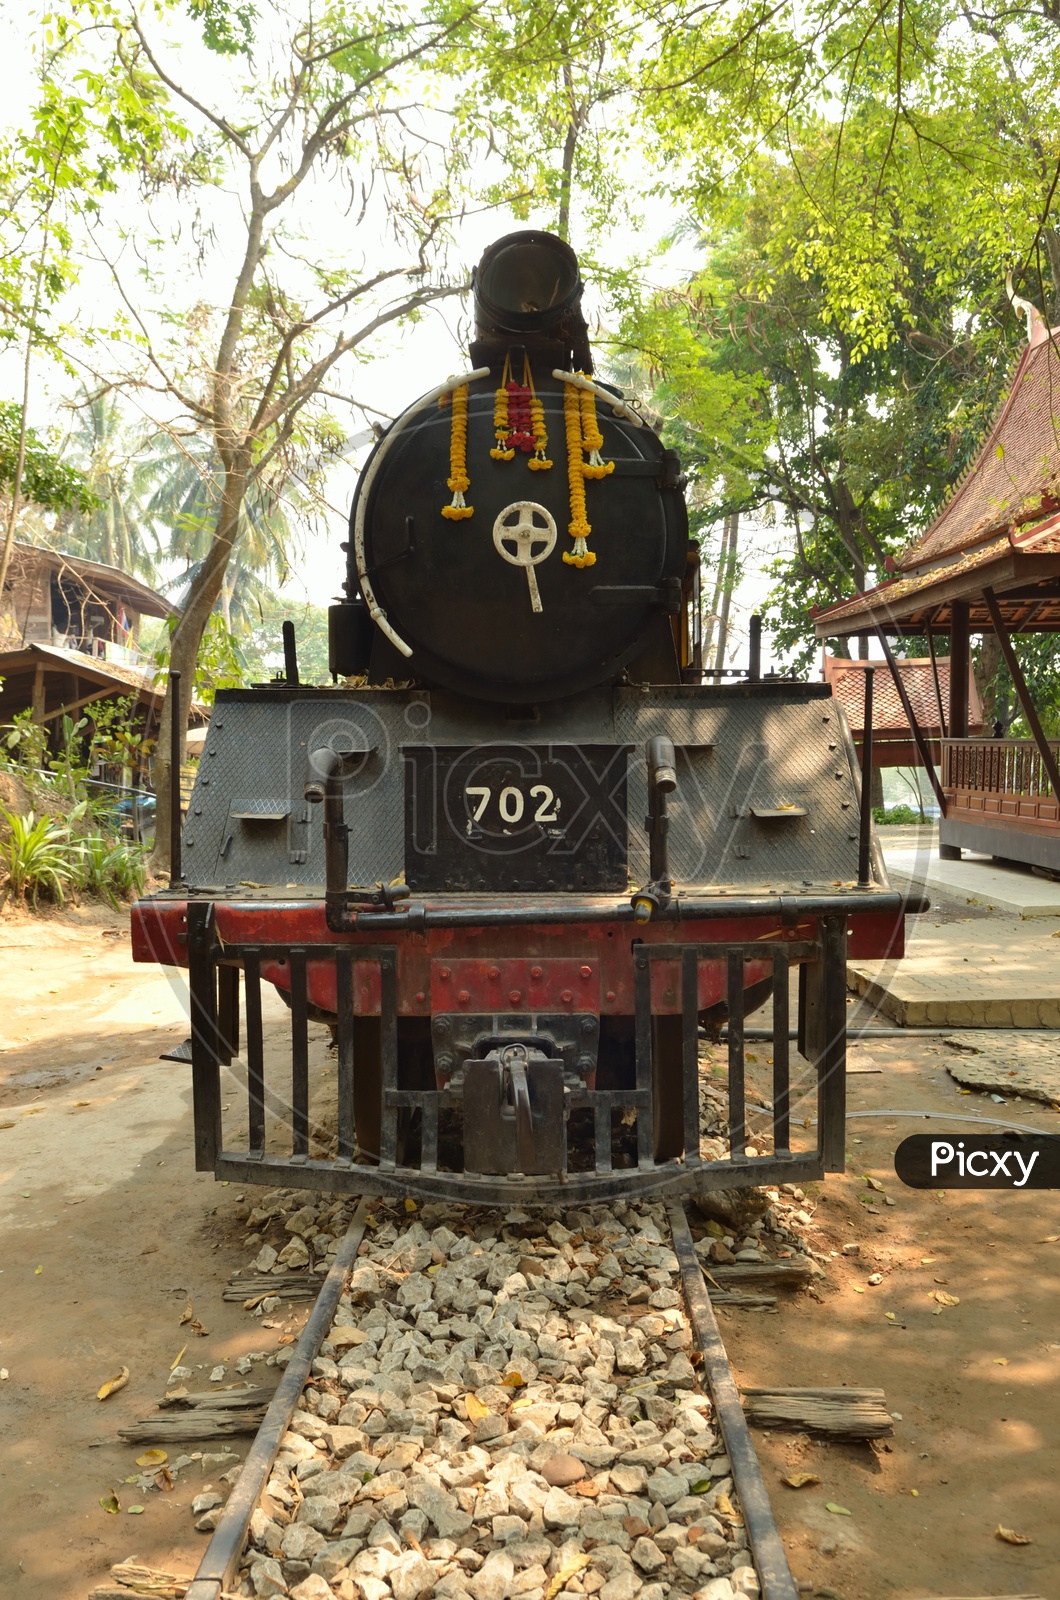 Vintage Railway Locomotive Engine